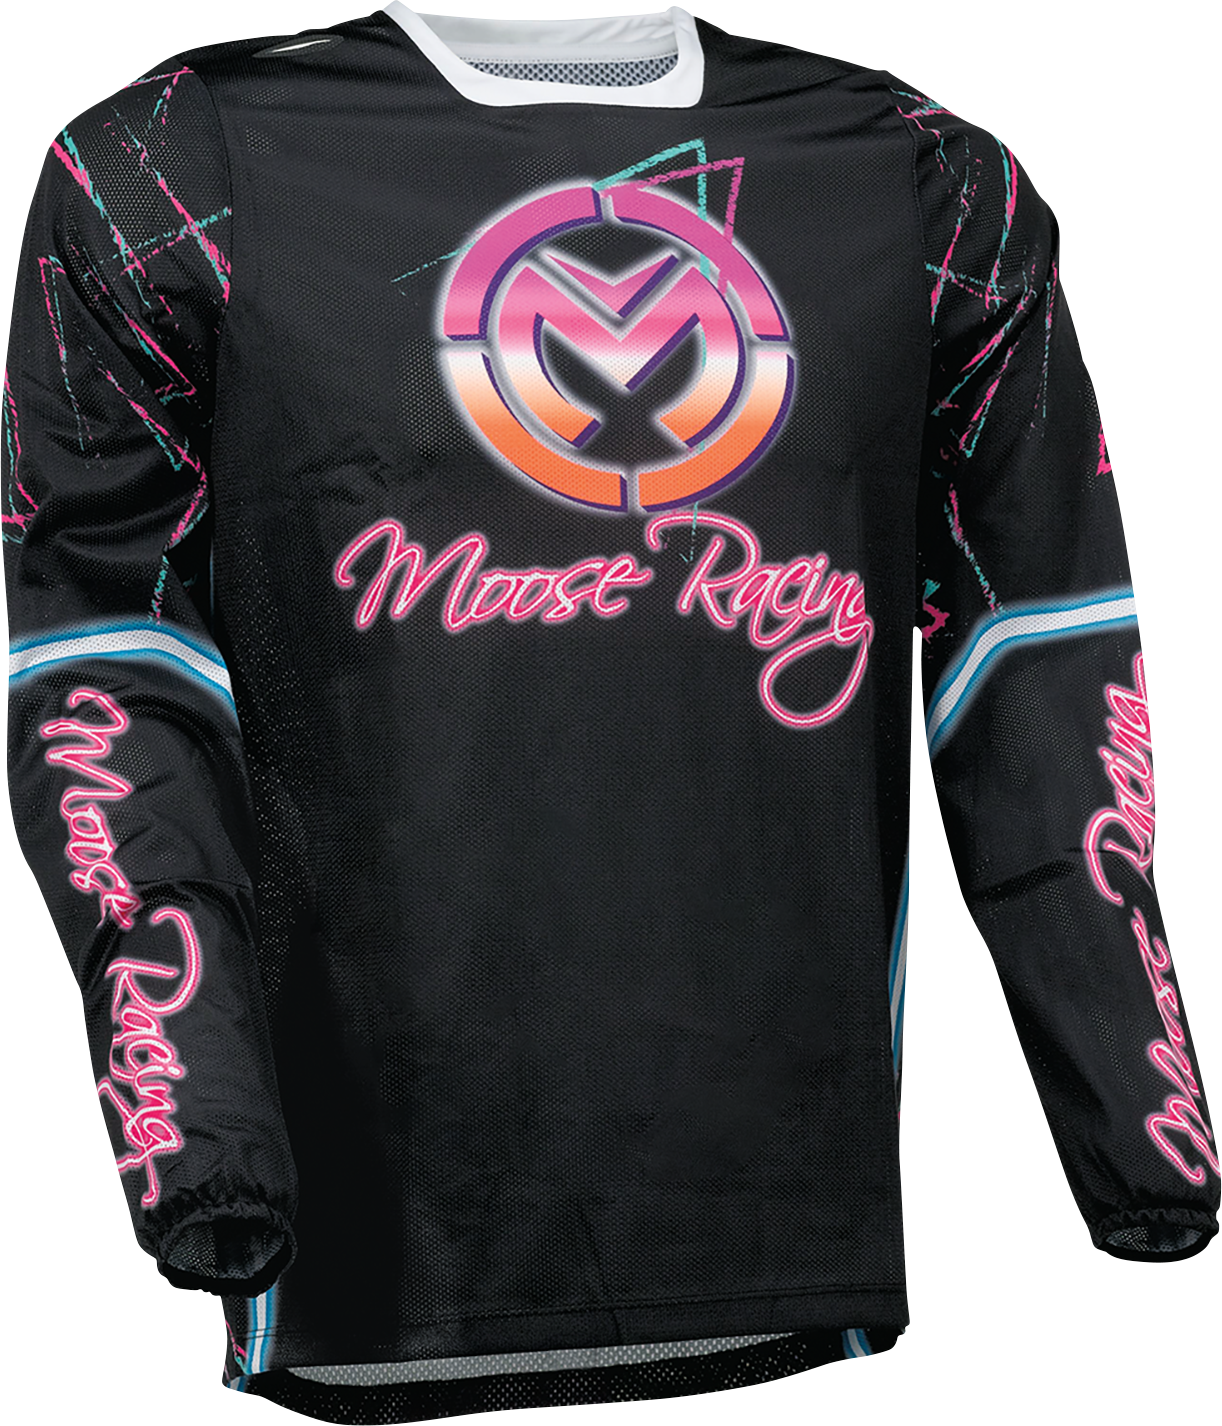 MOOSE RACING Sahara Jersey - Pink/Black - 3XL 2910-7455